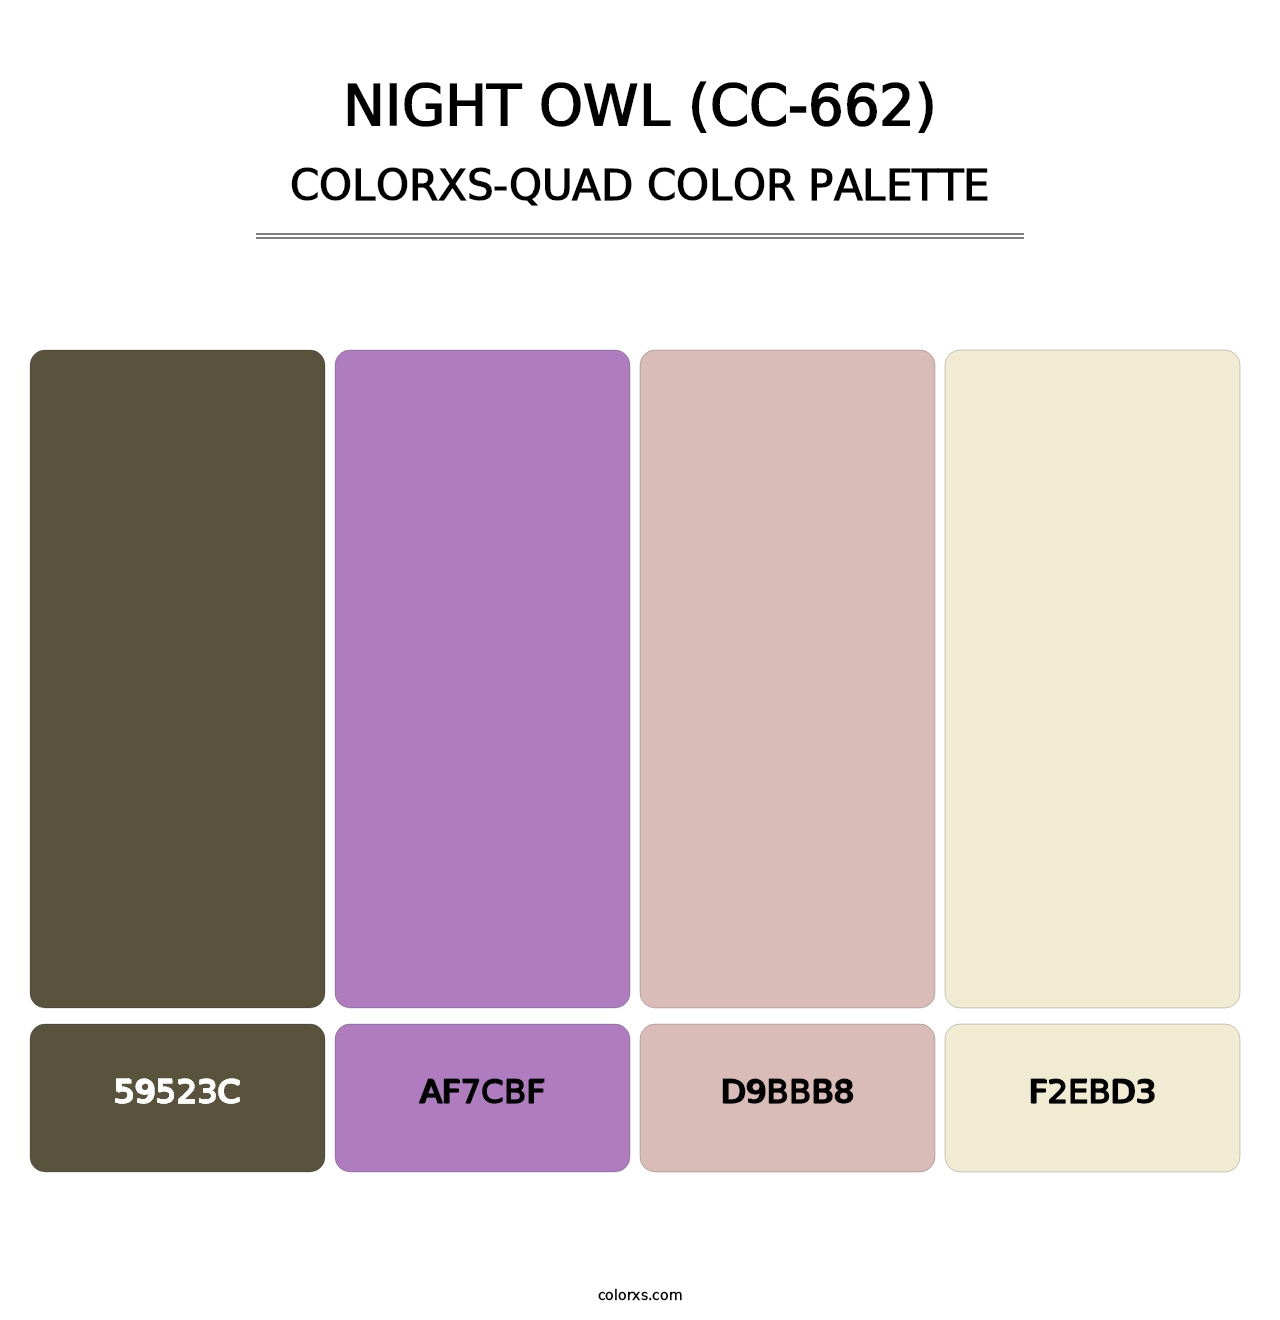 Night Owl (CC-662) - Colorxs Quad Palette